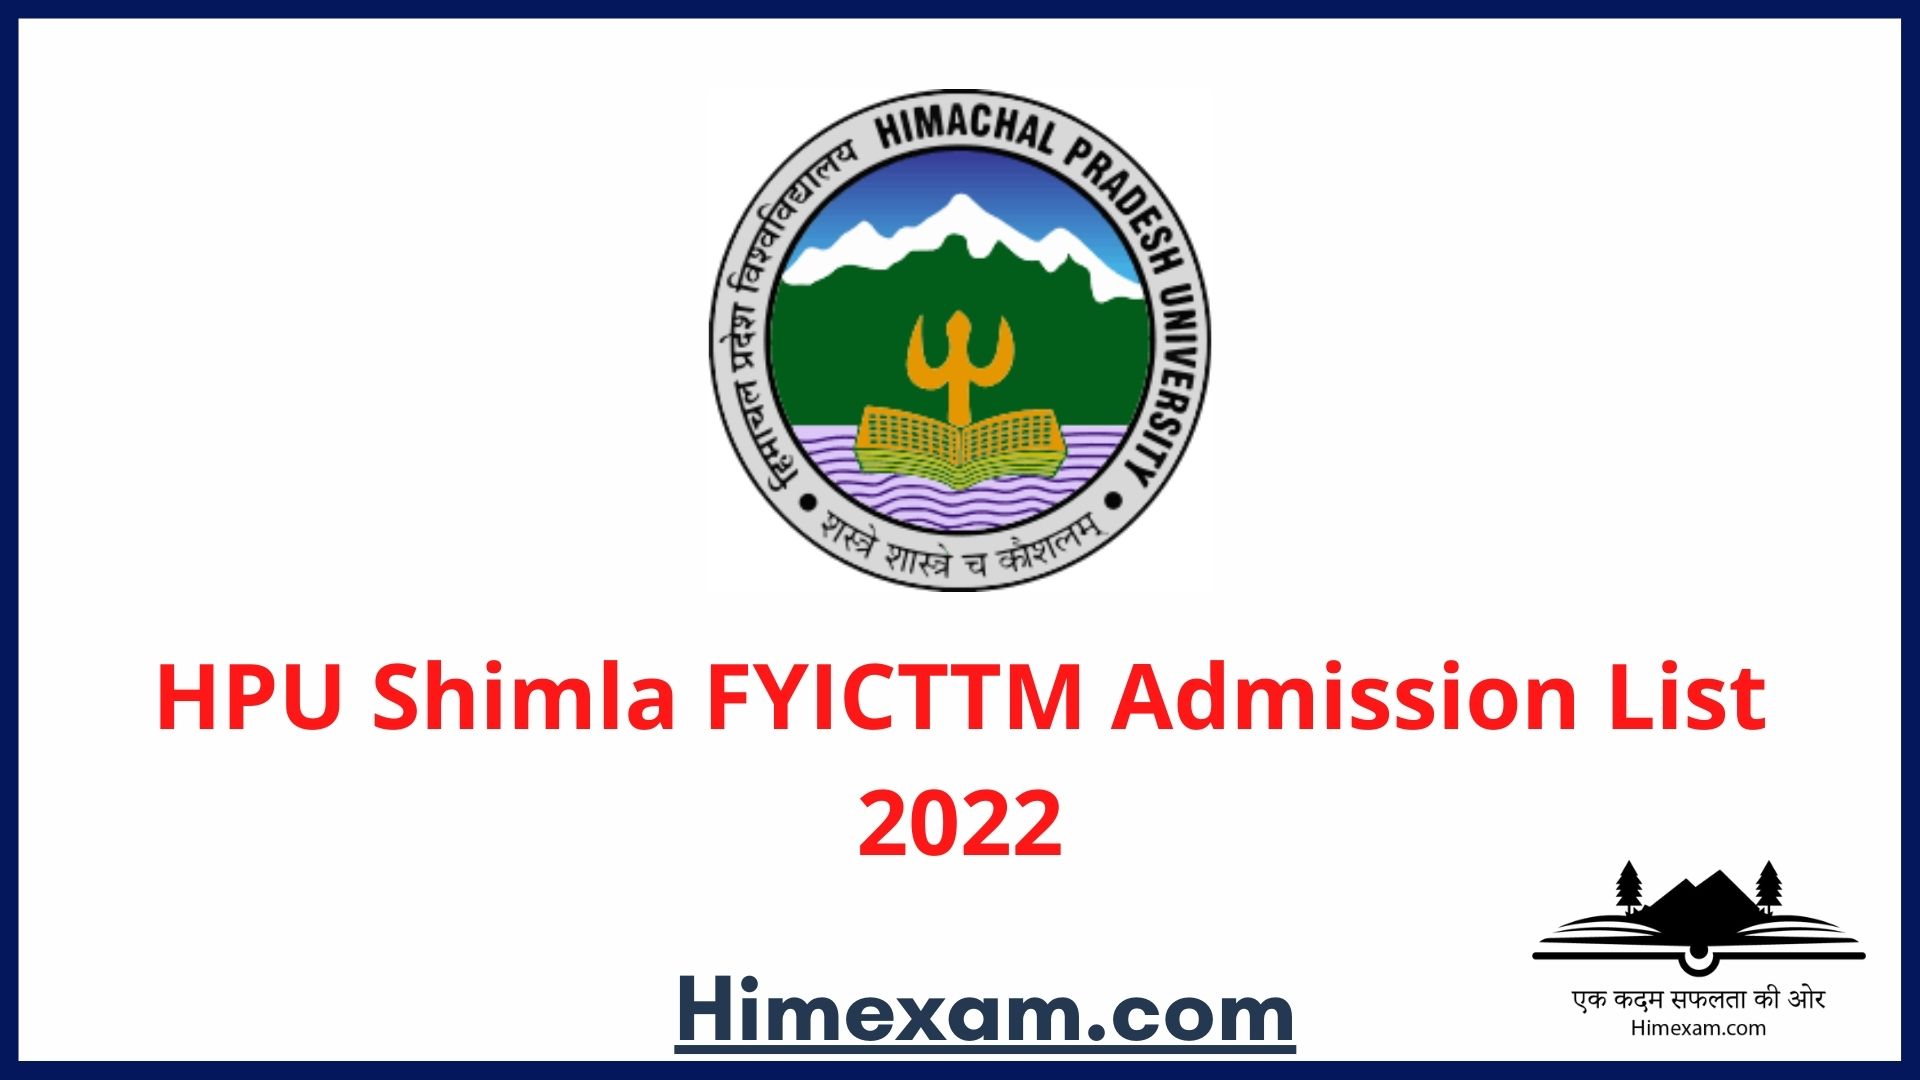 HPU Shimla FYICTTM Admission List 2022